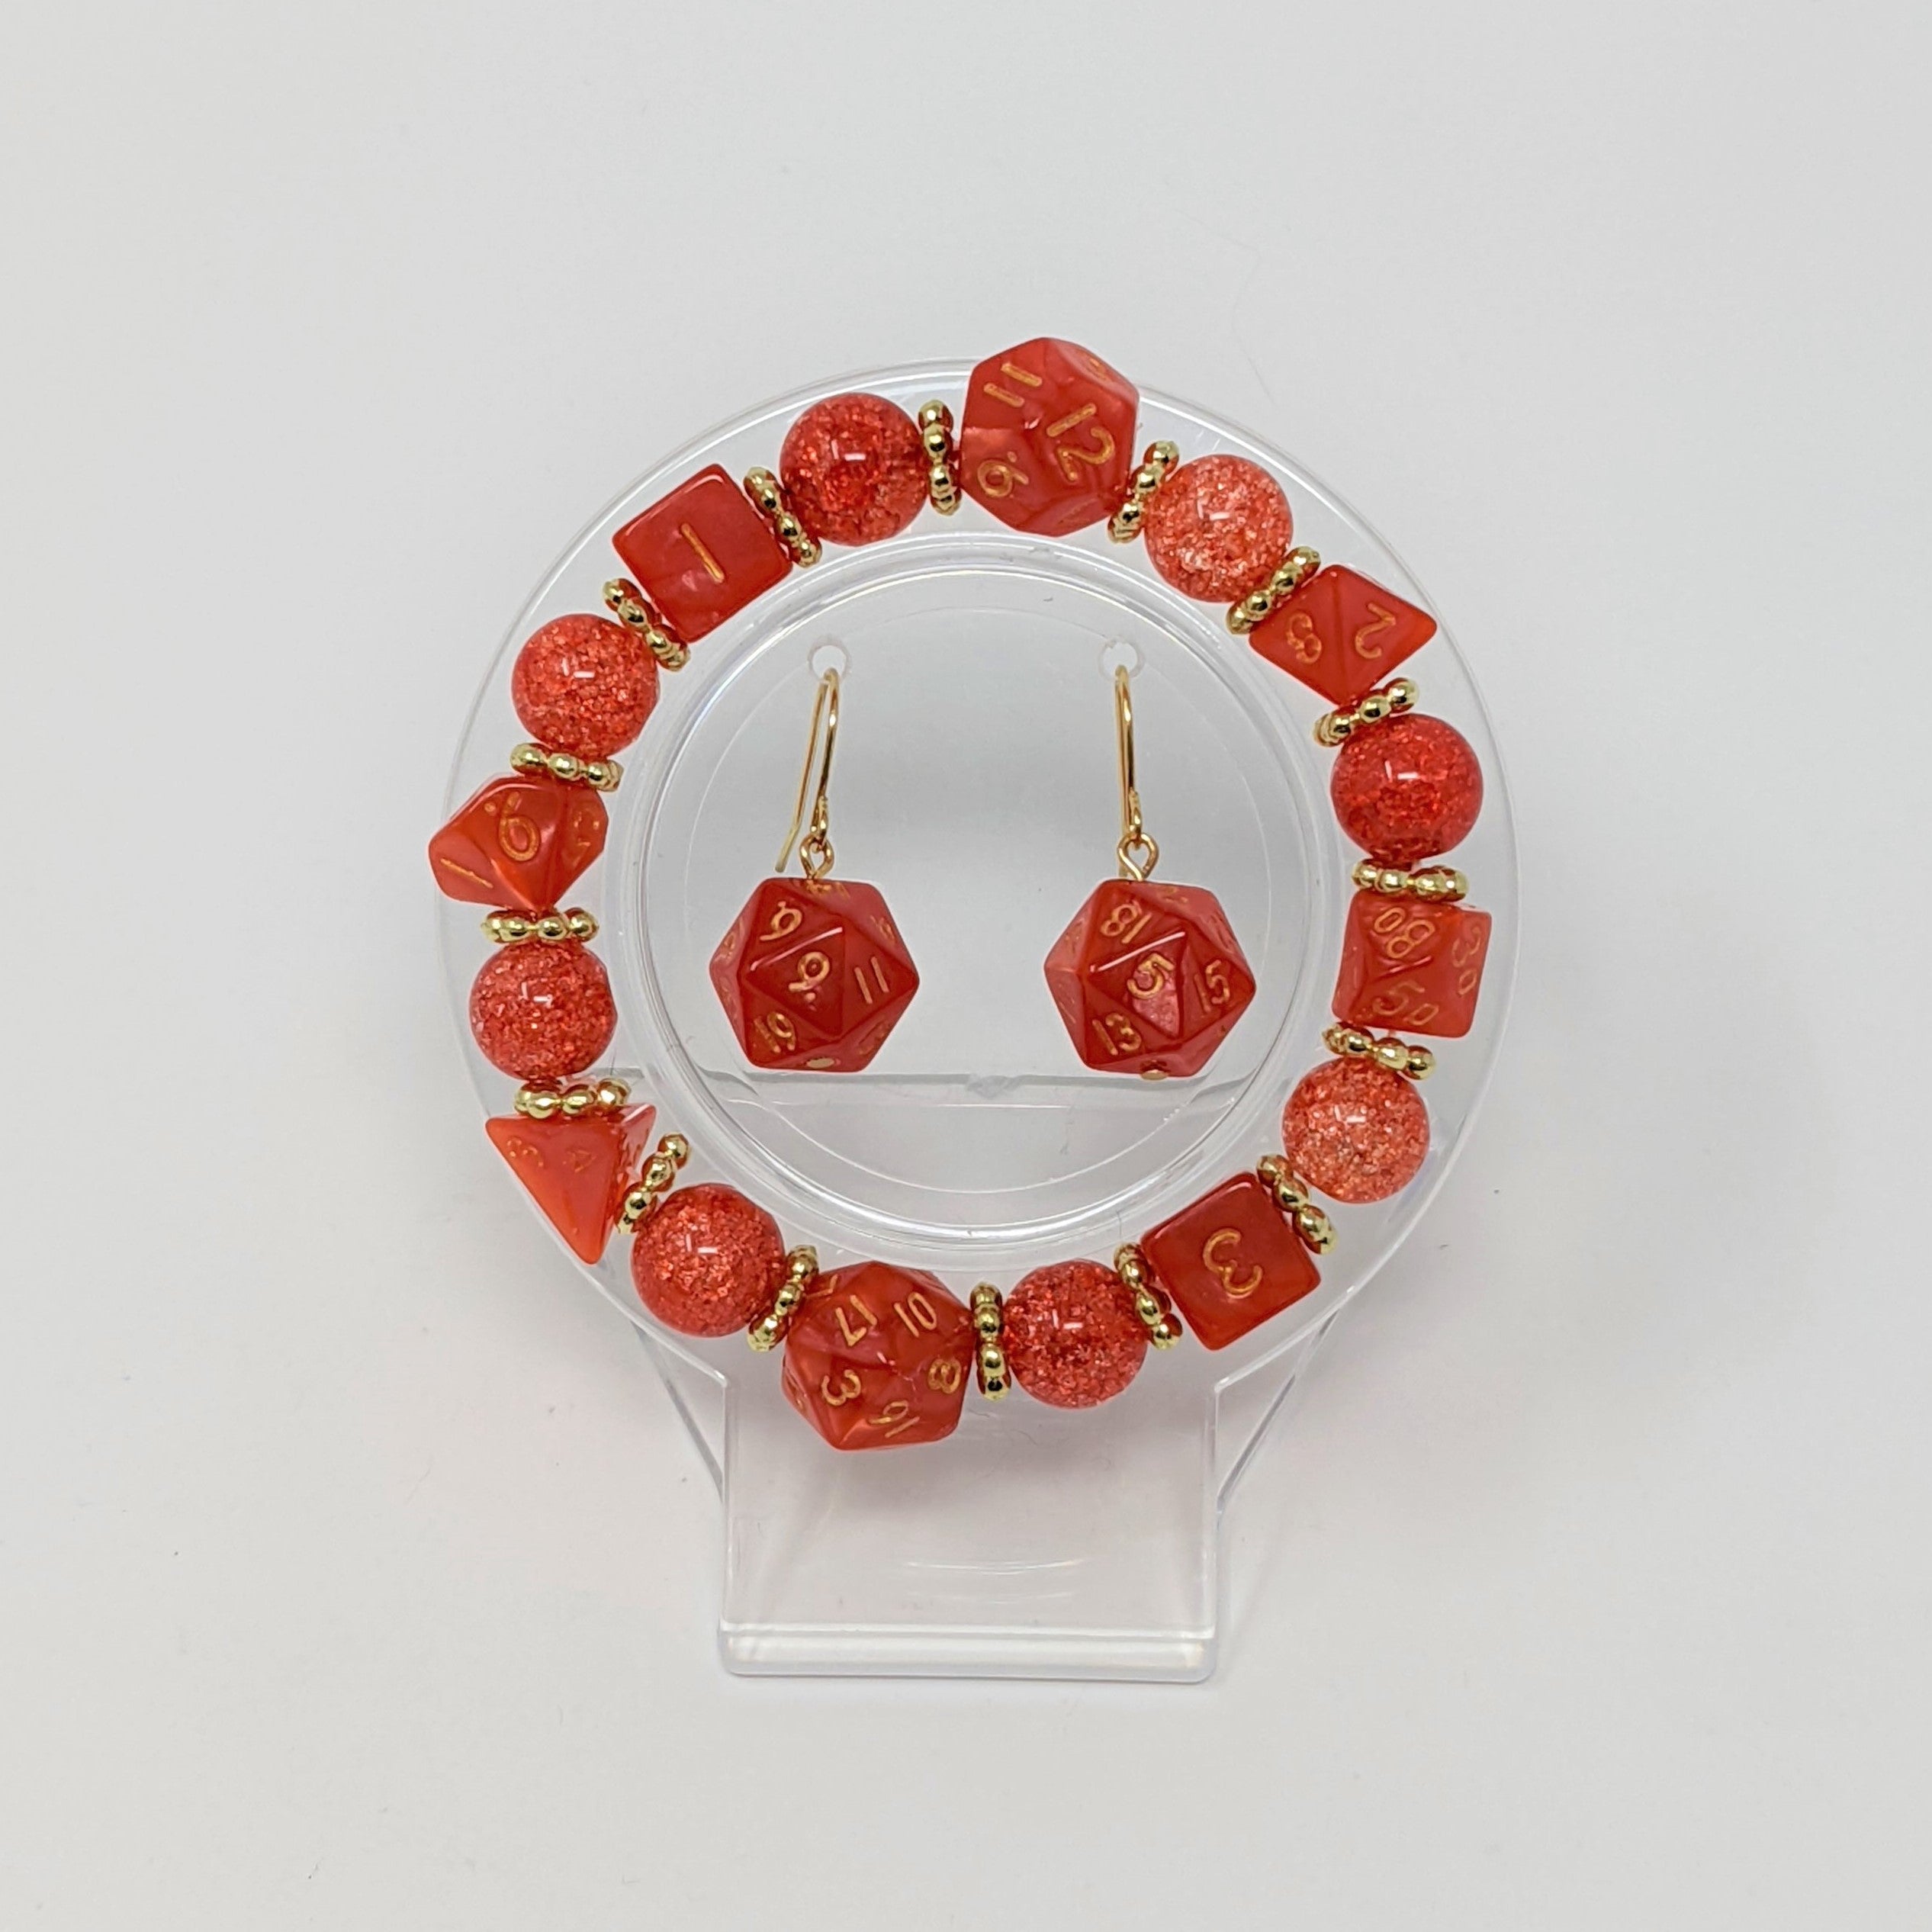 Coral Red Orange Crackle Beads Dice Bracelet